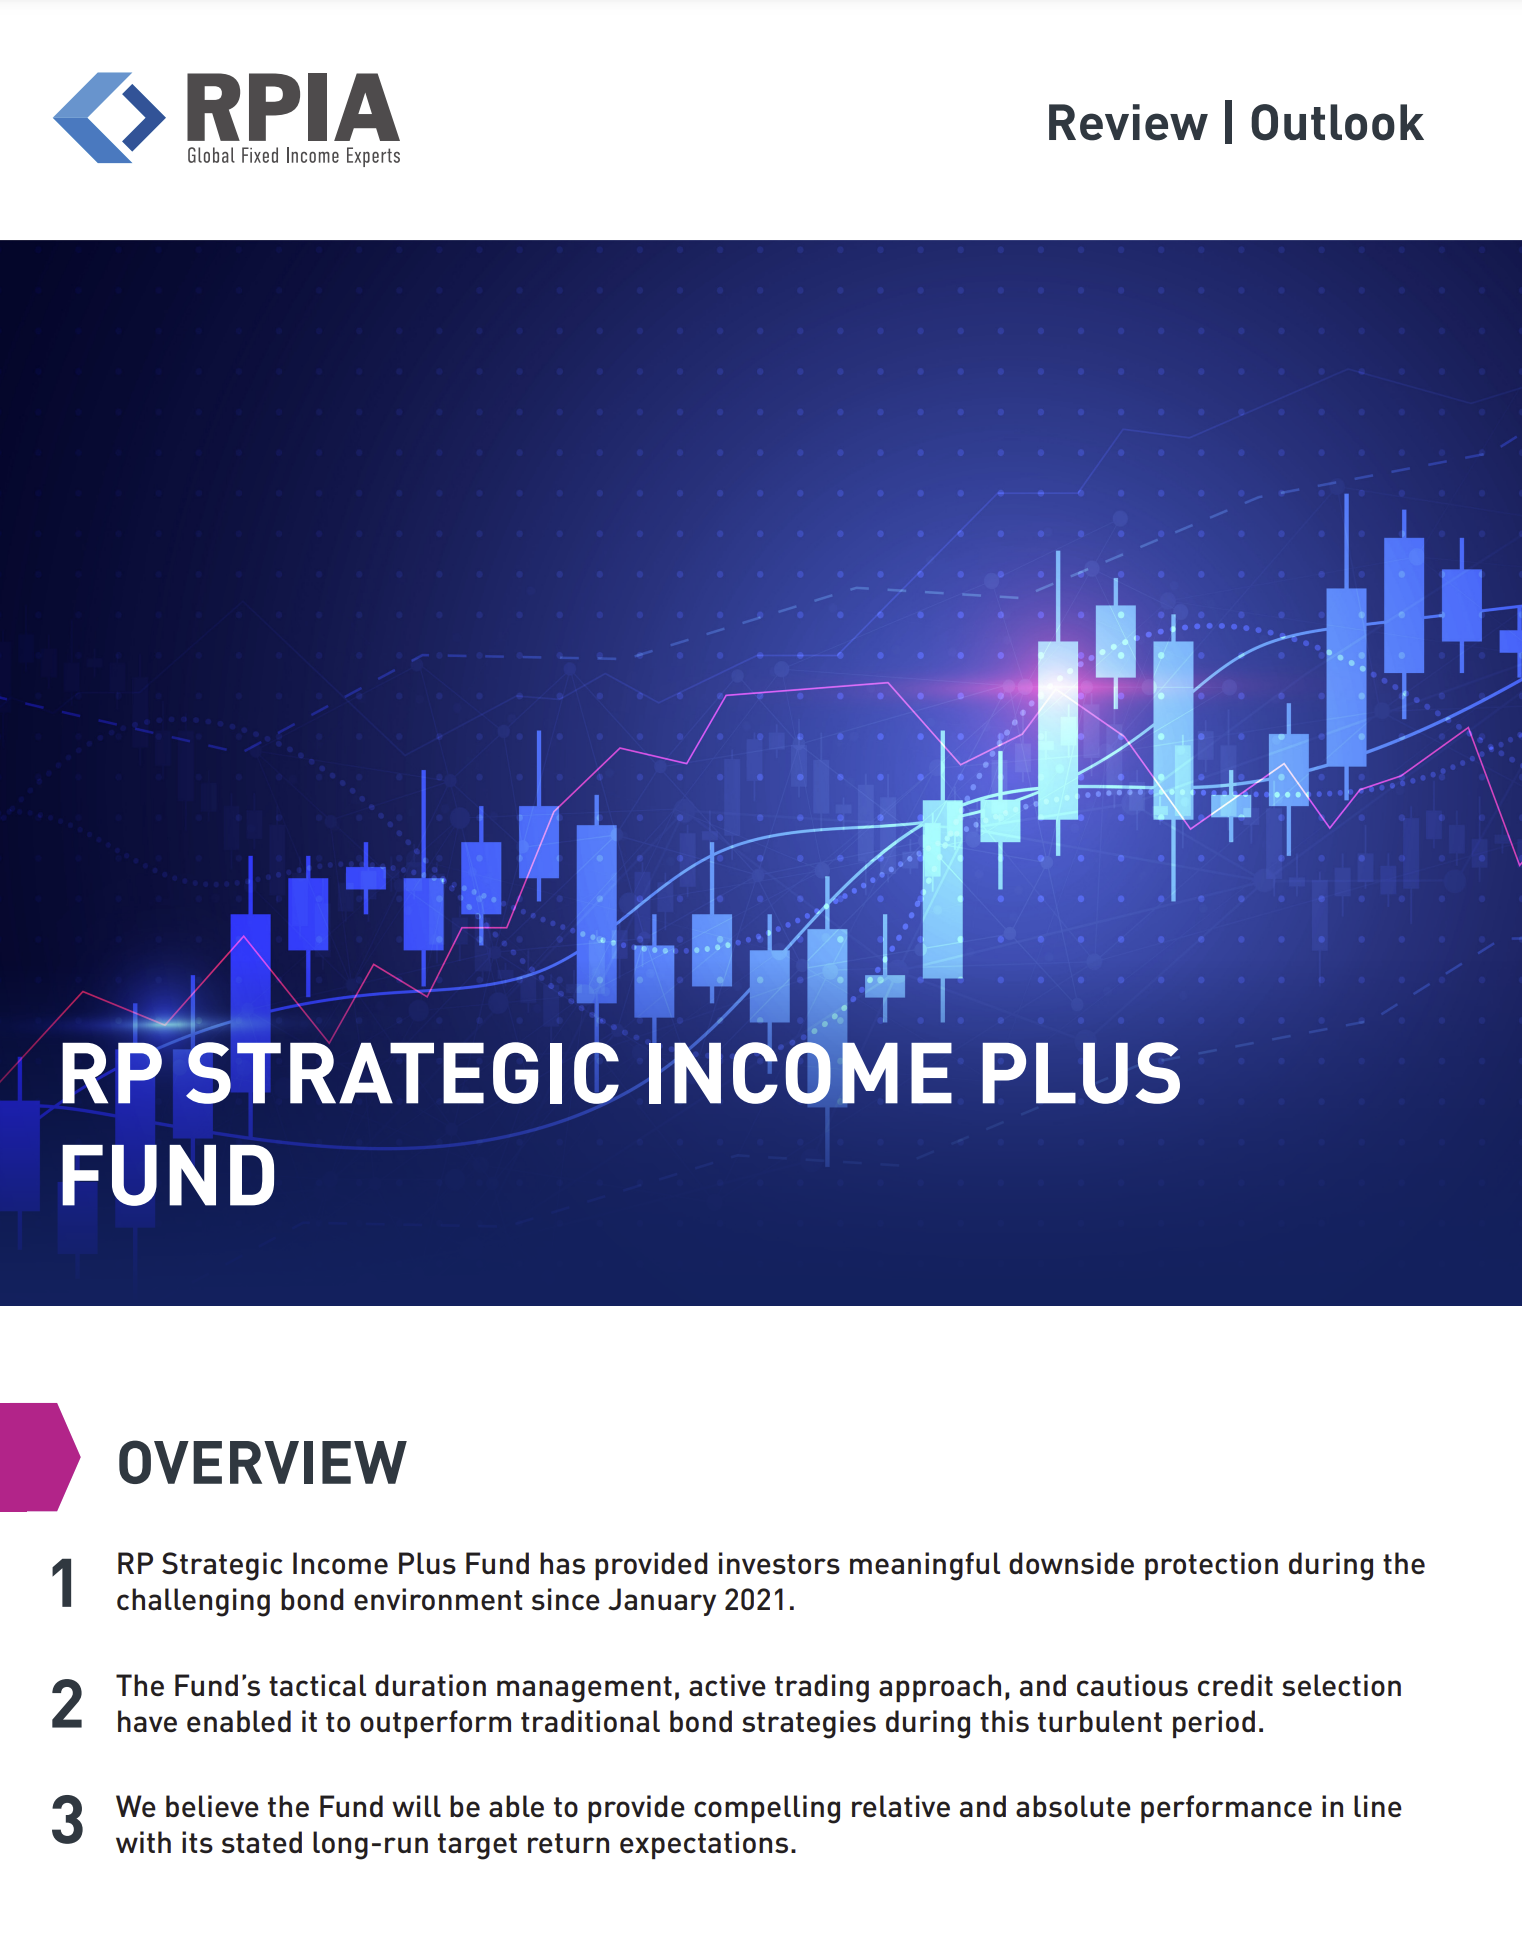 RP Strategic Income Plus Fund